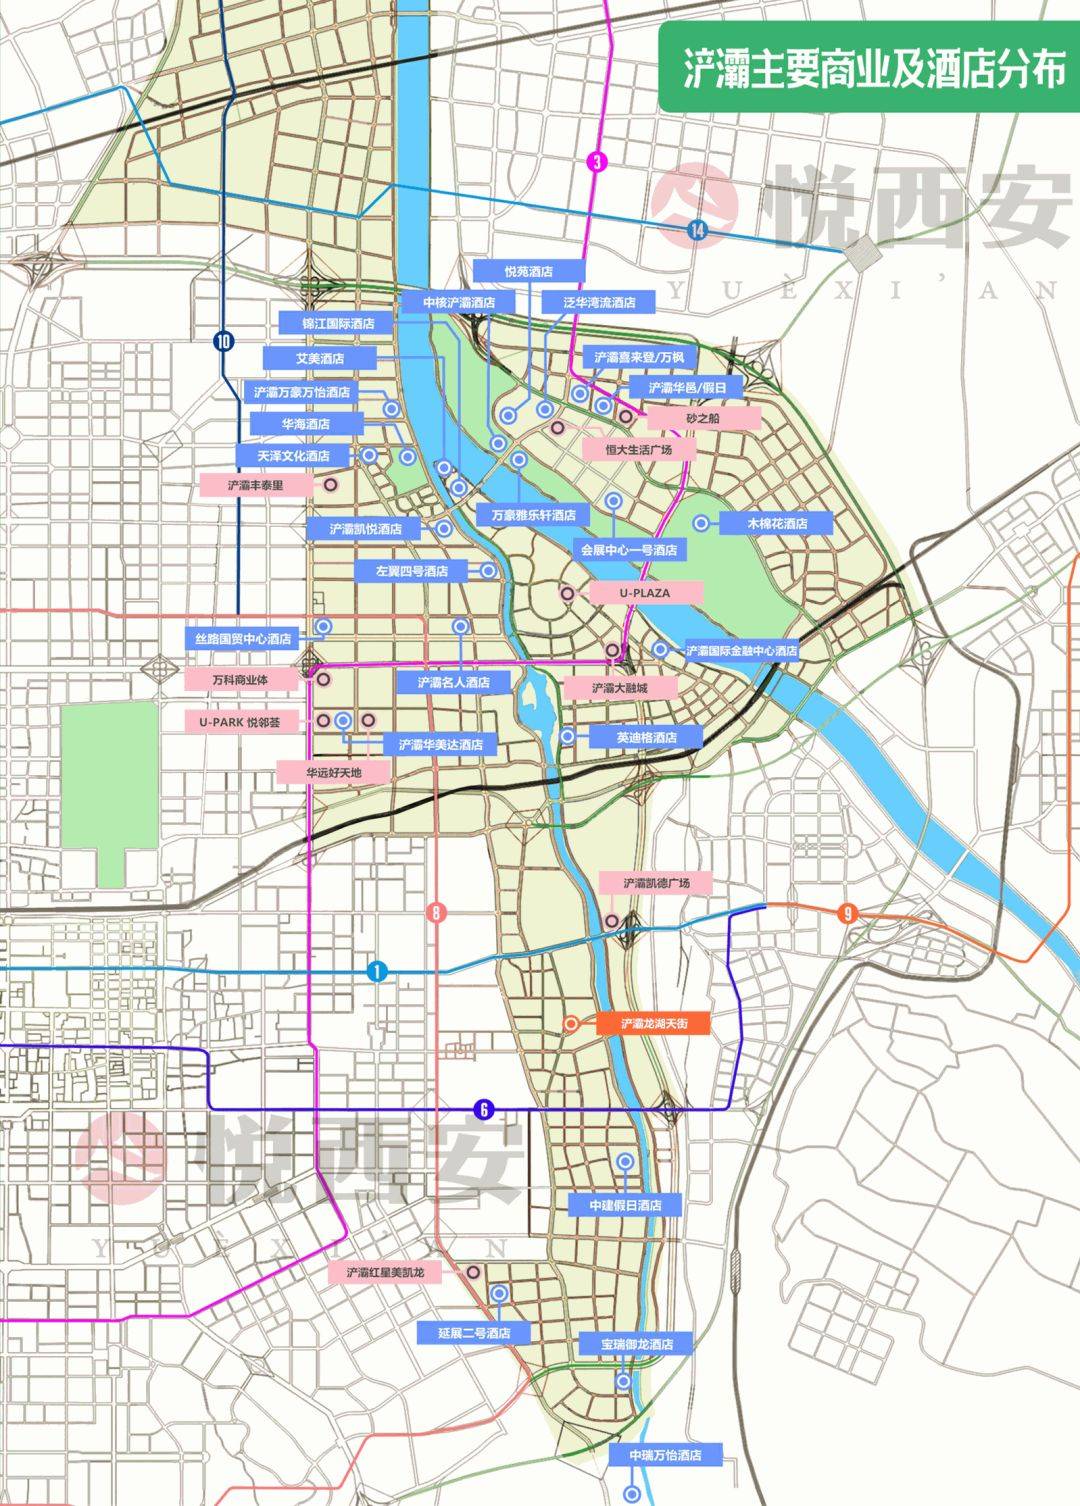 浐灞区地图图片